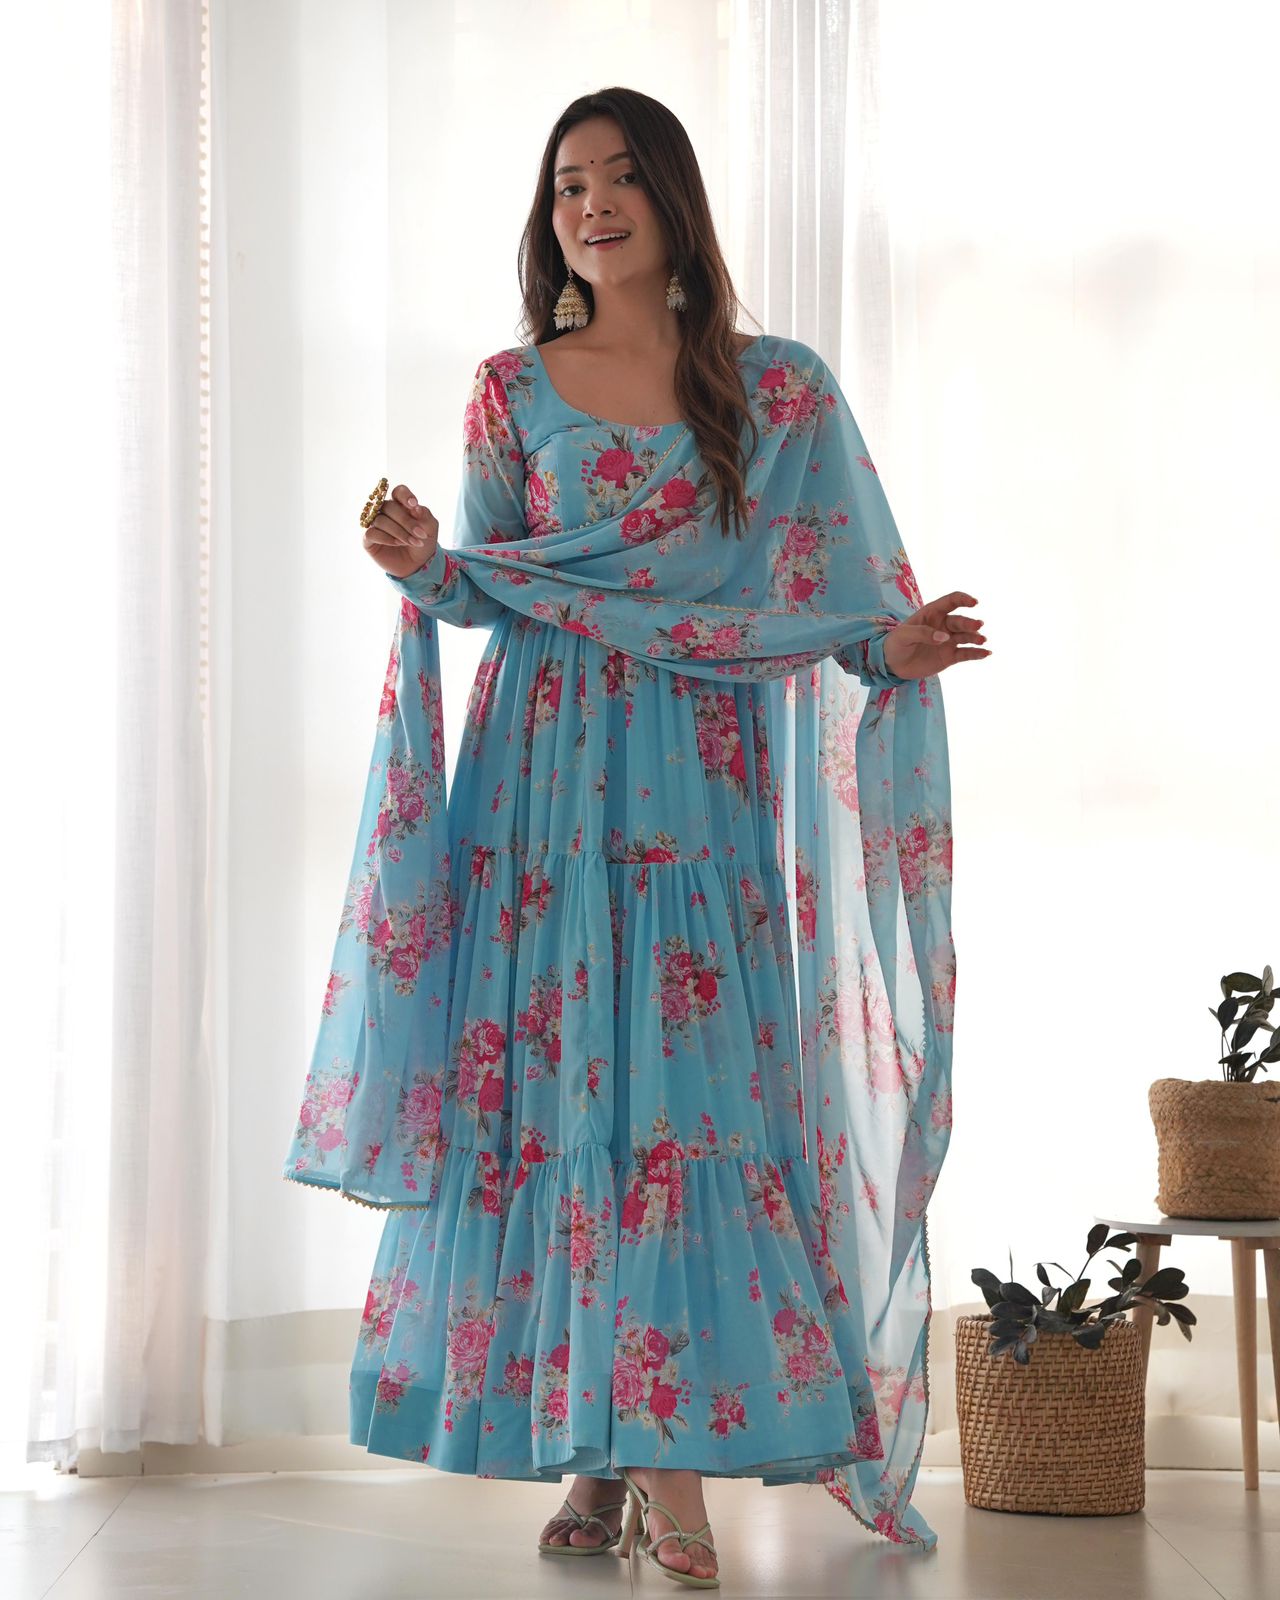 Light Blue Georgette Floral Anarkali Suit - Shopaholics Choice